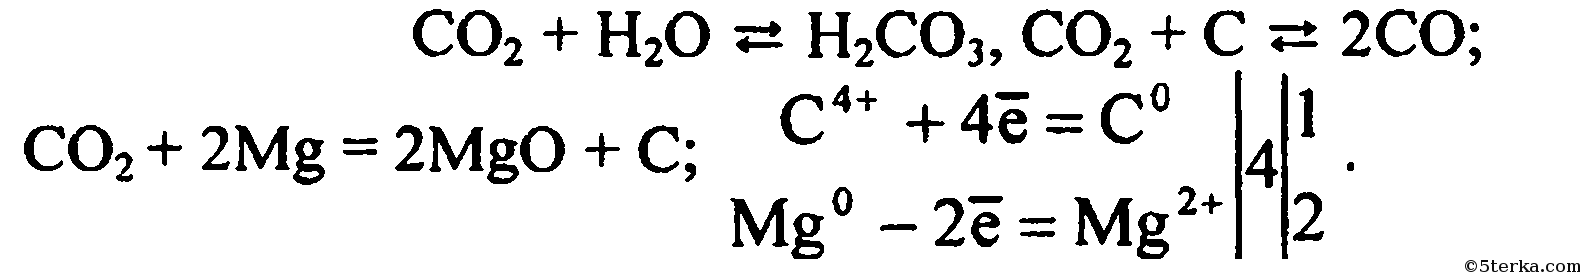 Напишите уравнения реакций углерода с магнием